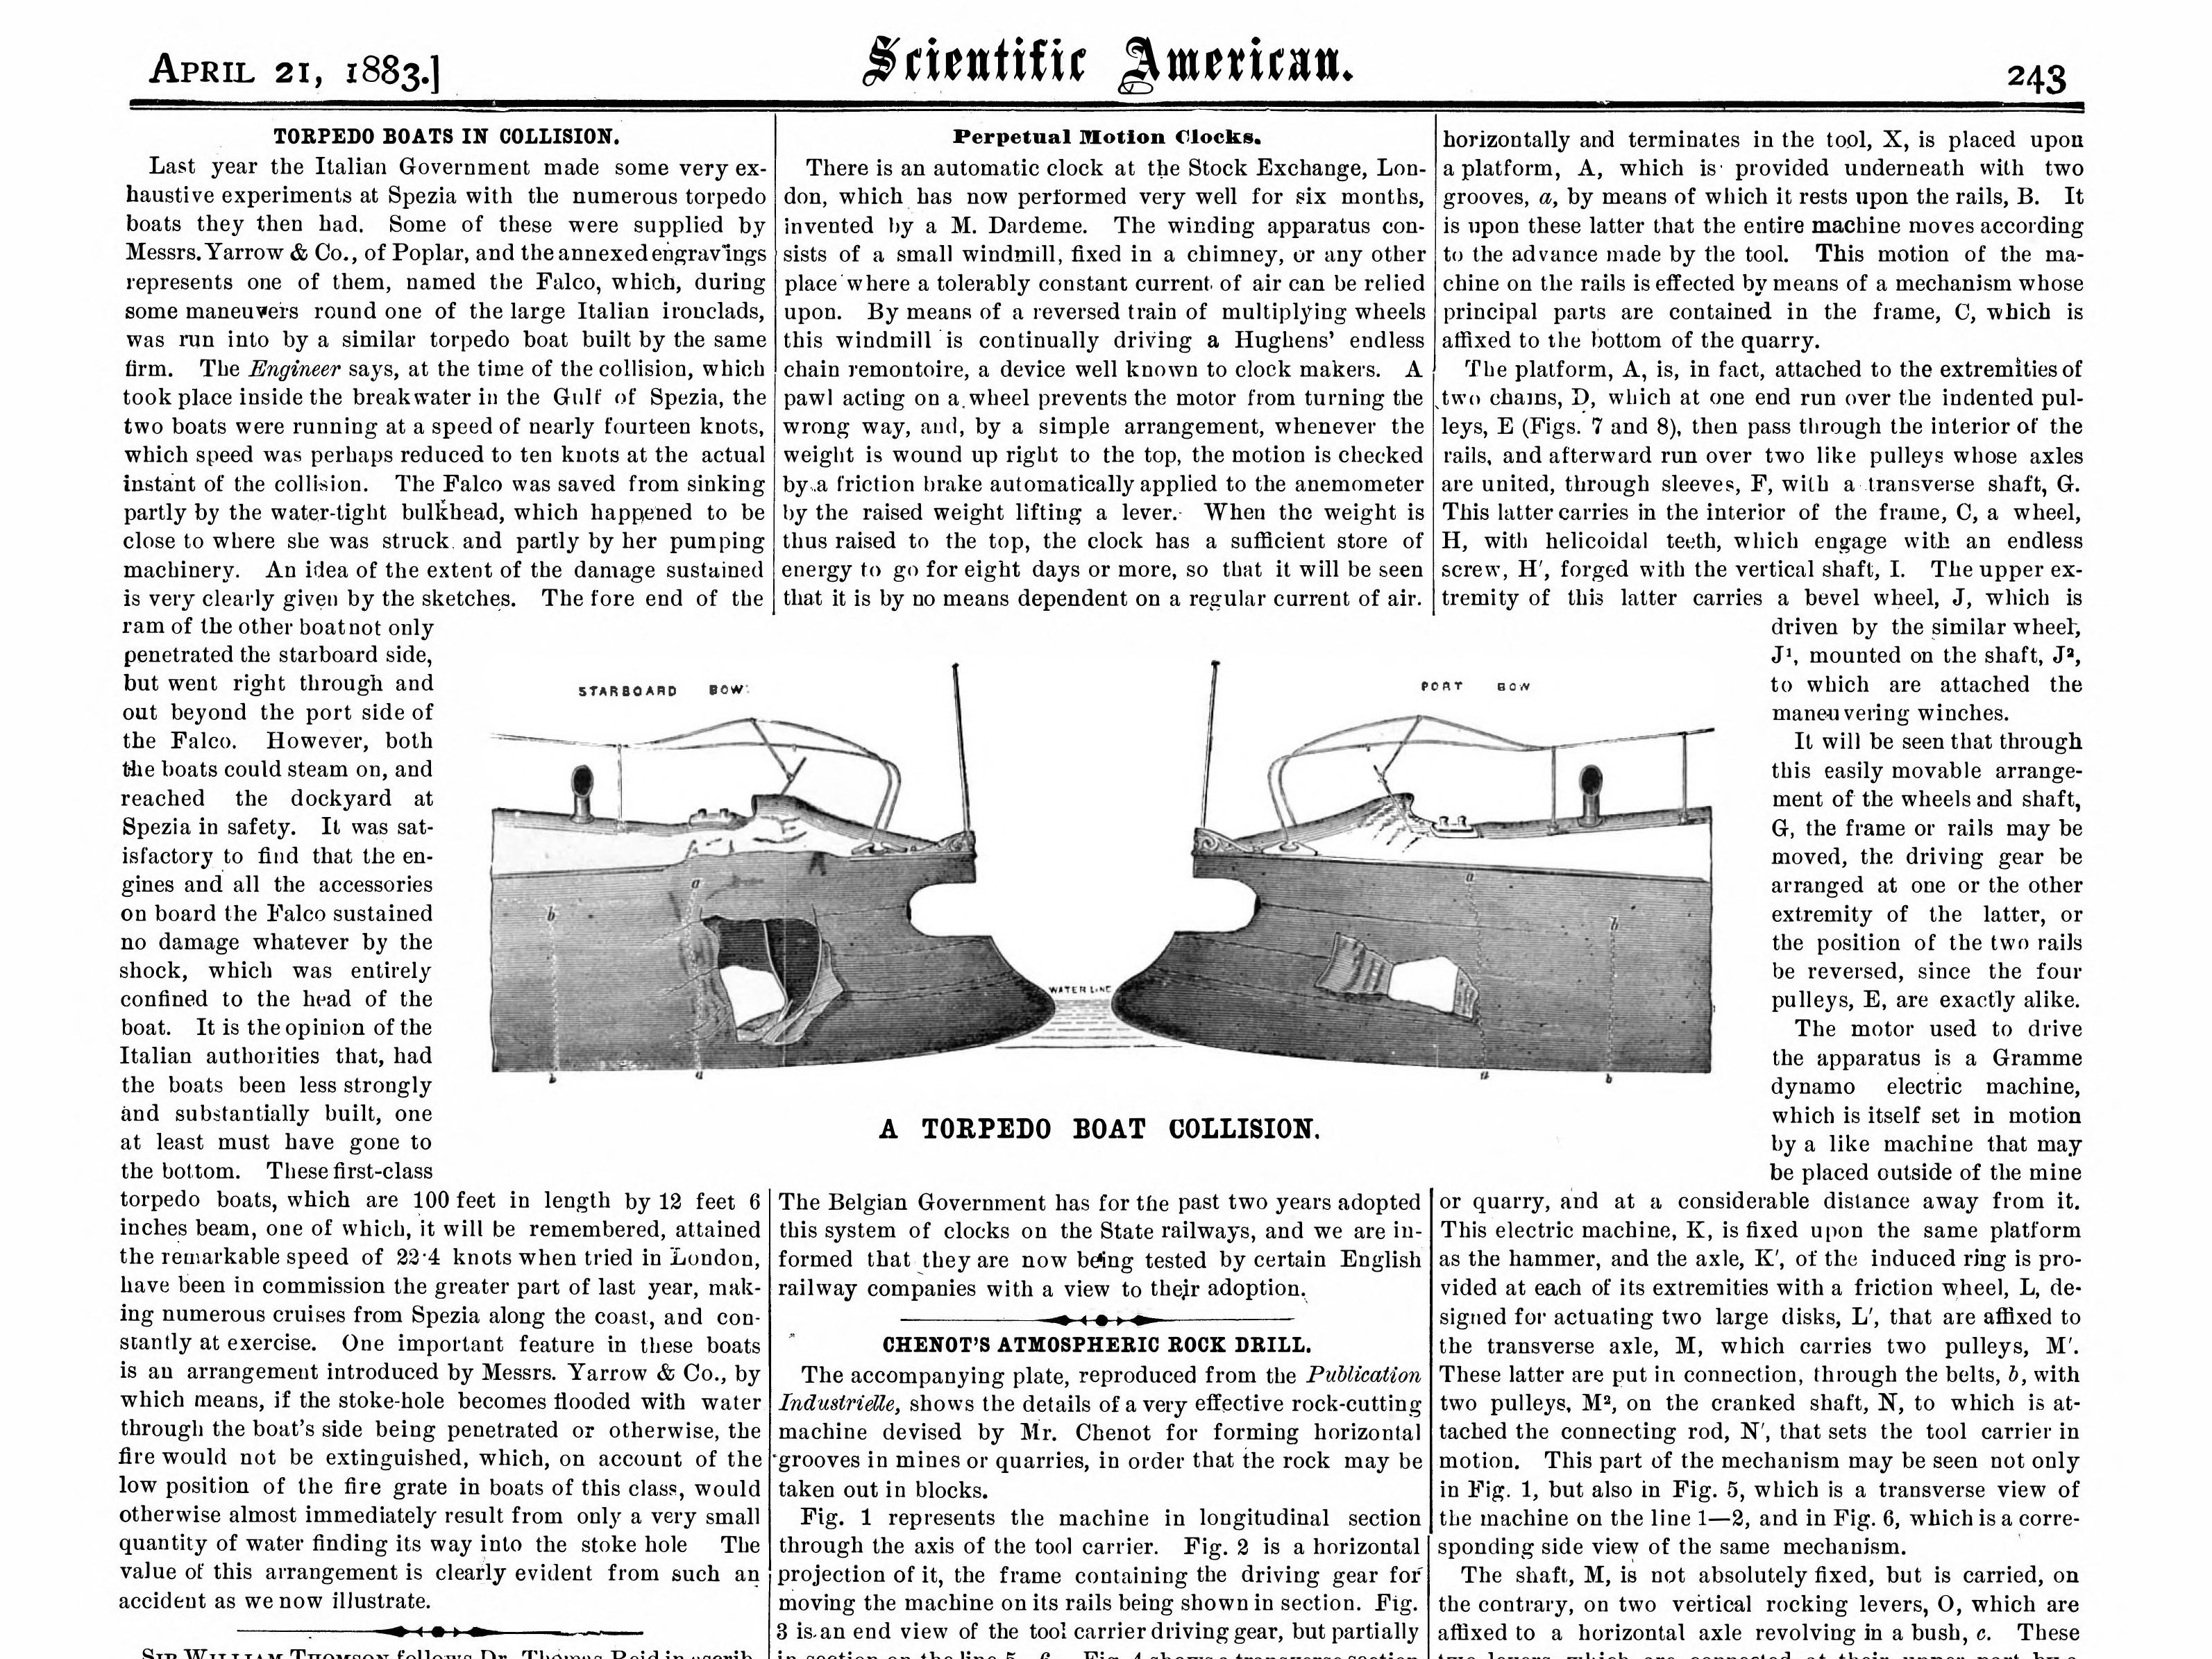 Италия - столкновение миноносцев в 1882 (scientific-american-v48-n16-1883-04-21_0004).jpg